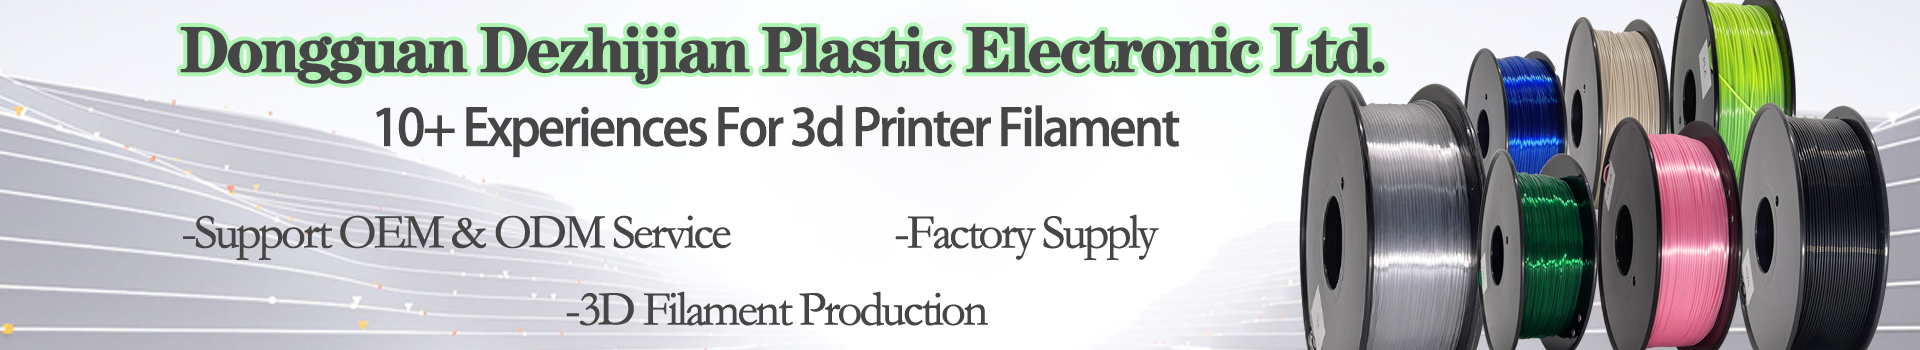 ABS Glass fiber   3D Printer 1.75mm ABS fiber Filament For 3D Printer